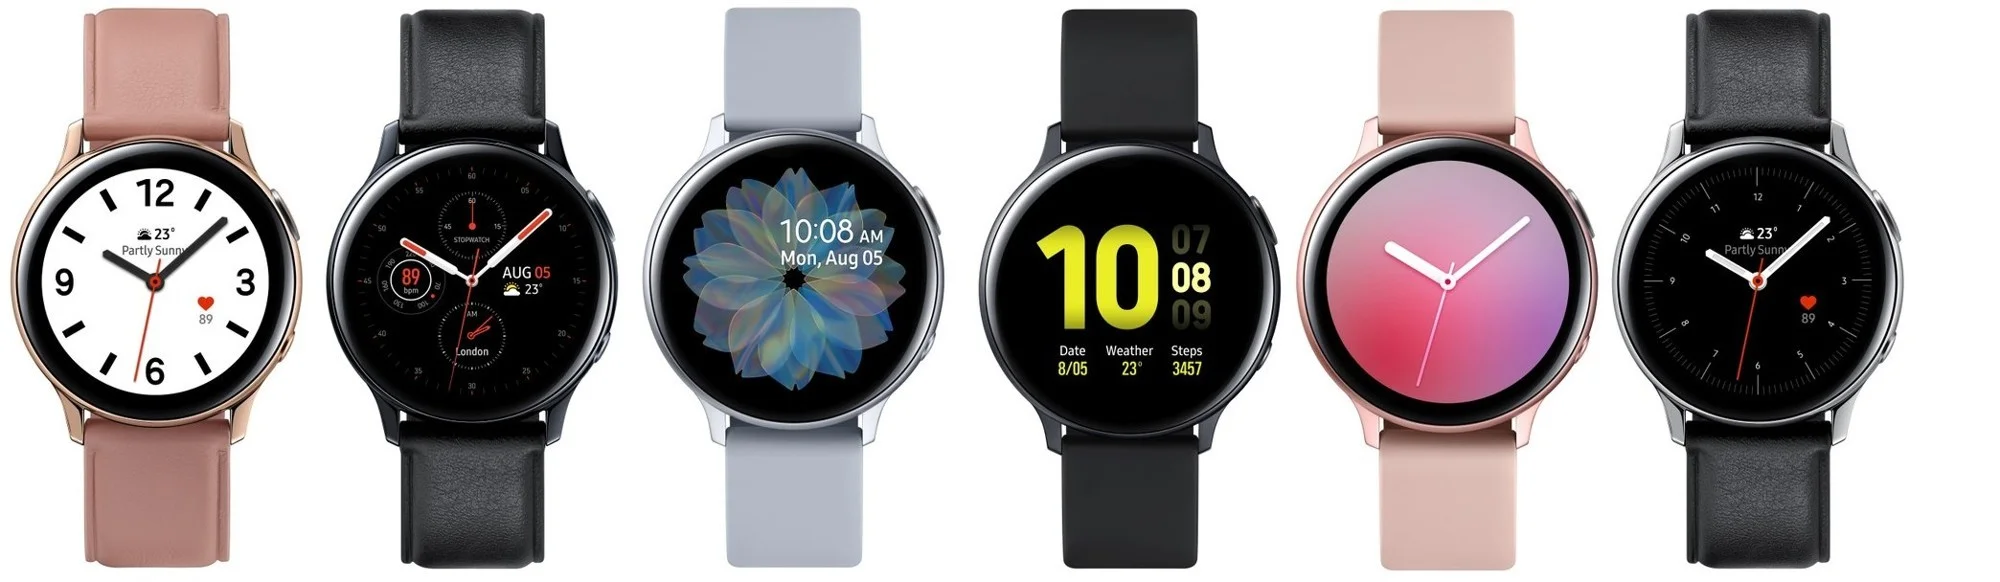 Смарт-часы Samsung Galaxy Watch Active 2 получили сенсорный корпус и ценник от 18 000 рублей - фото 2